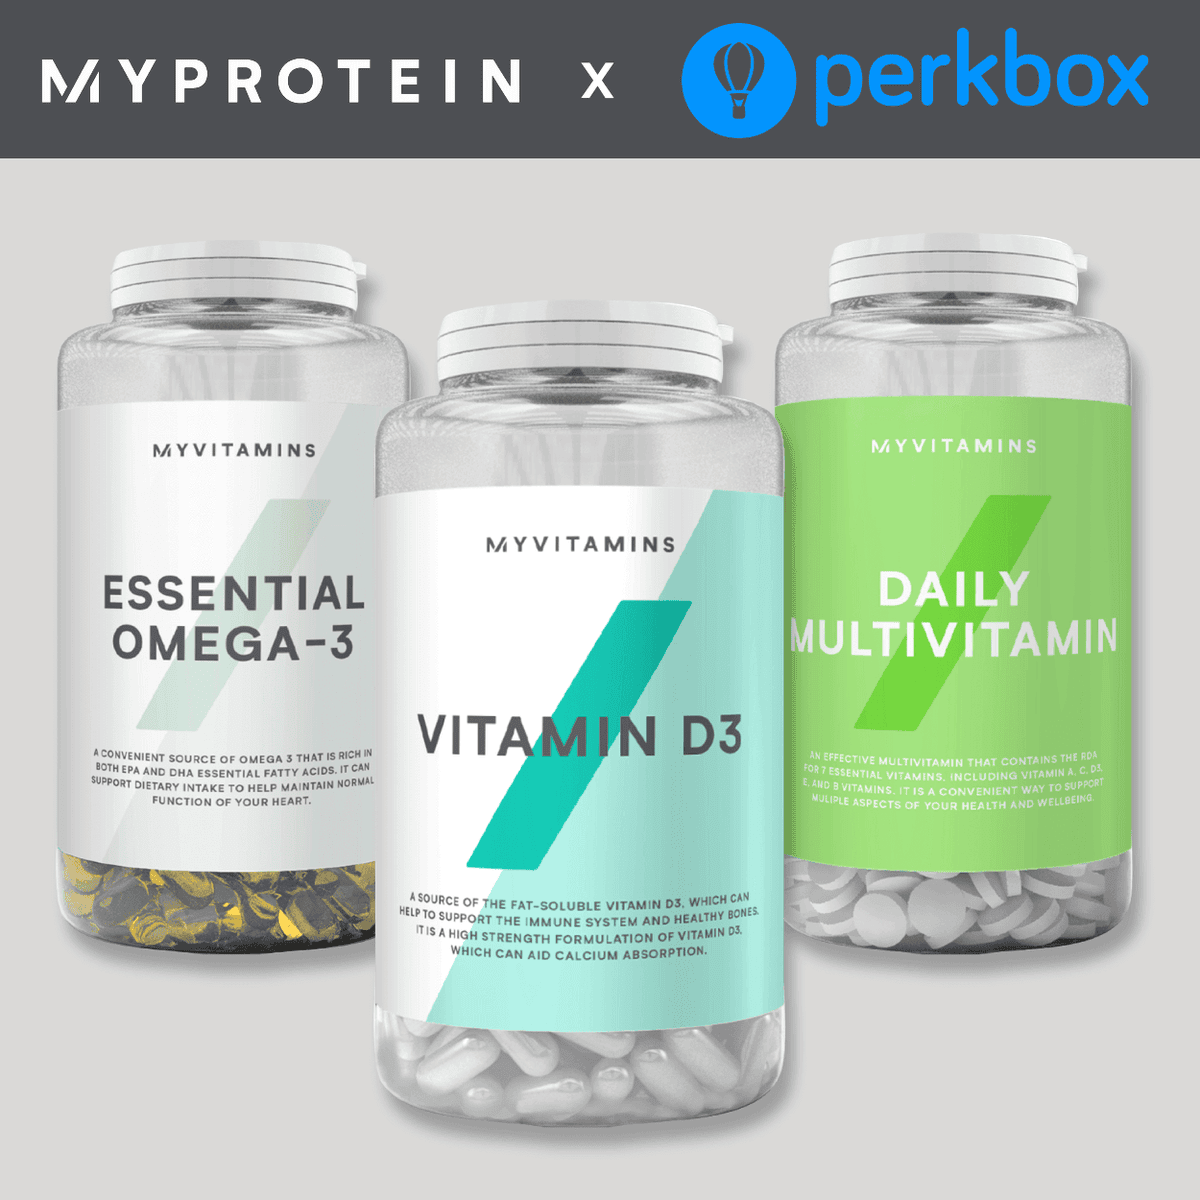 Myprotein x Perkbox